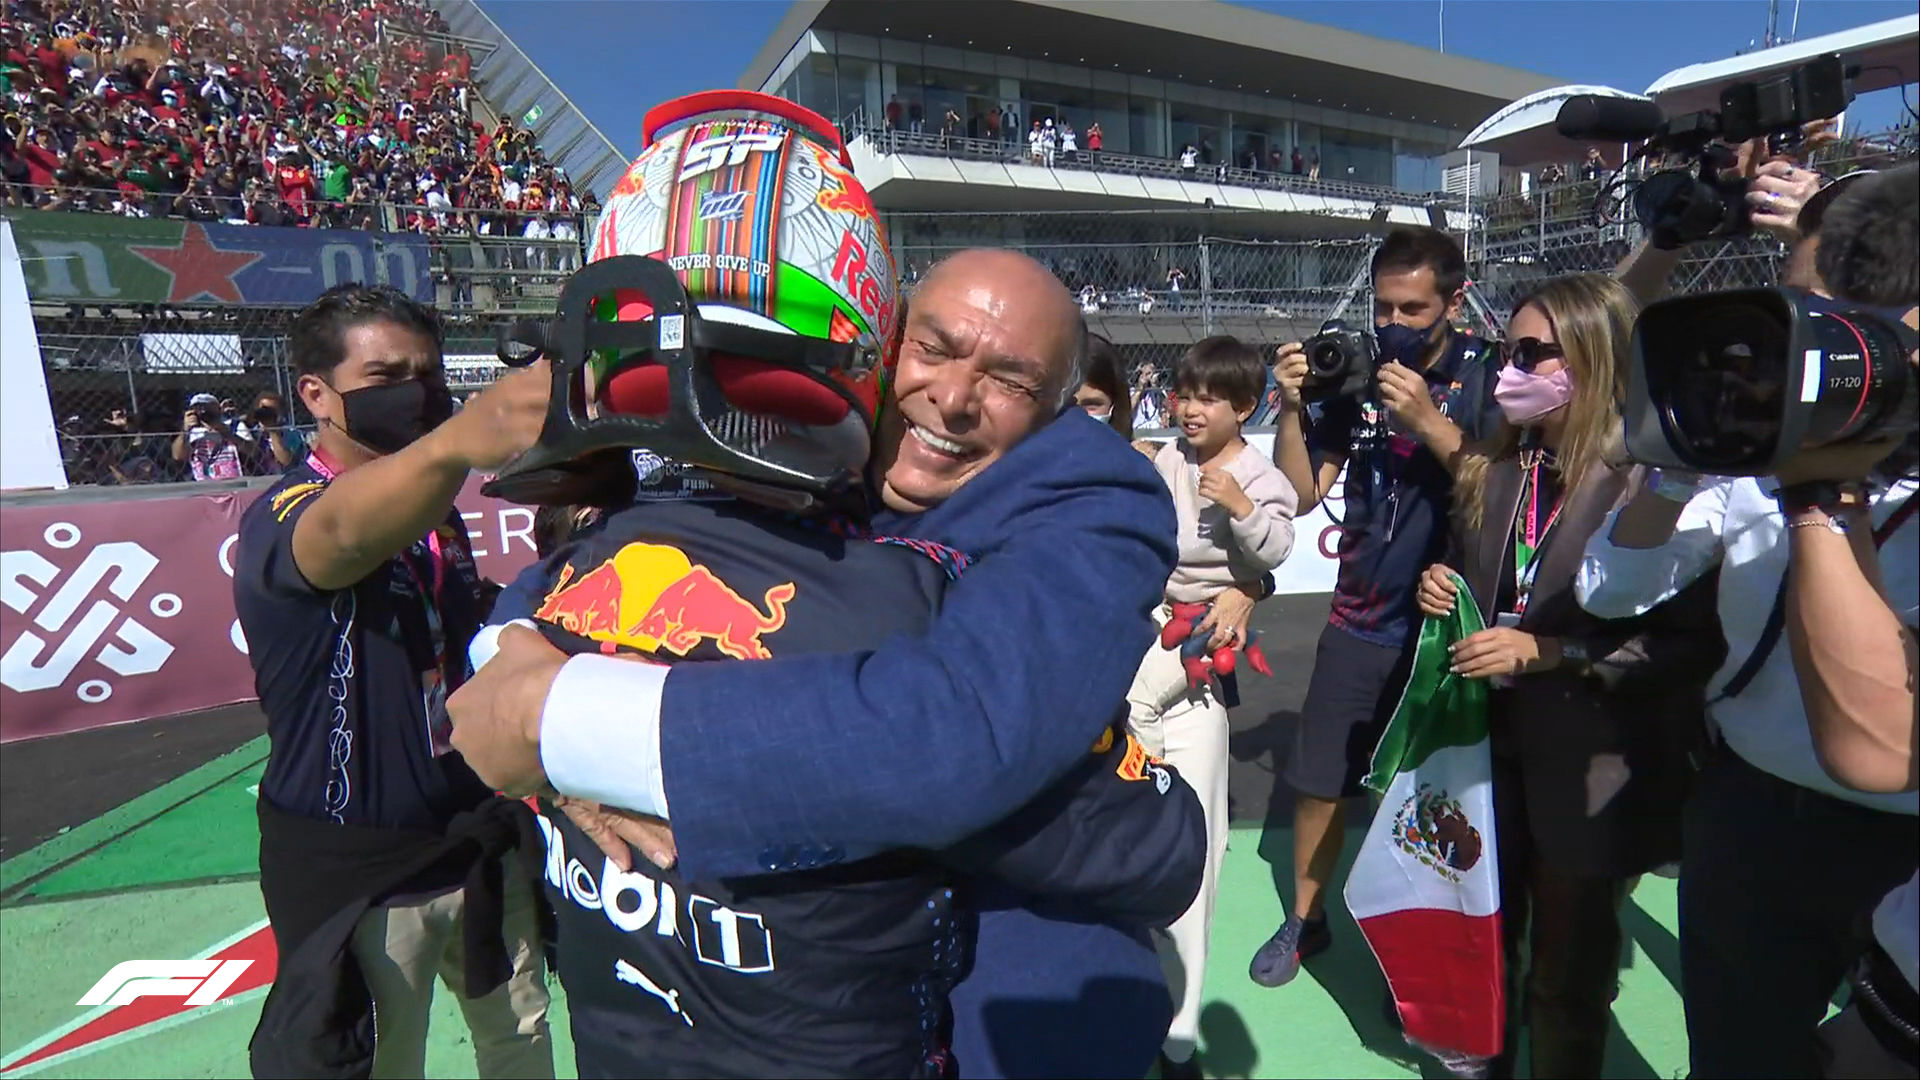 F1: Max Verstappen wins the Mexican Grand Prix, Sergio Perez seals home podium